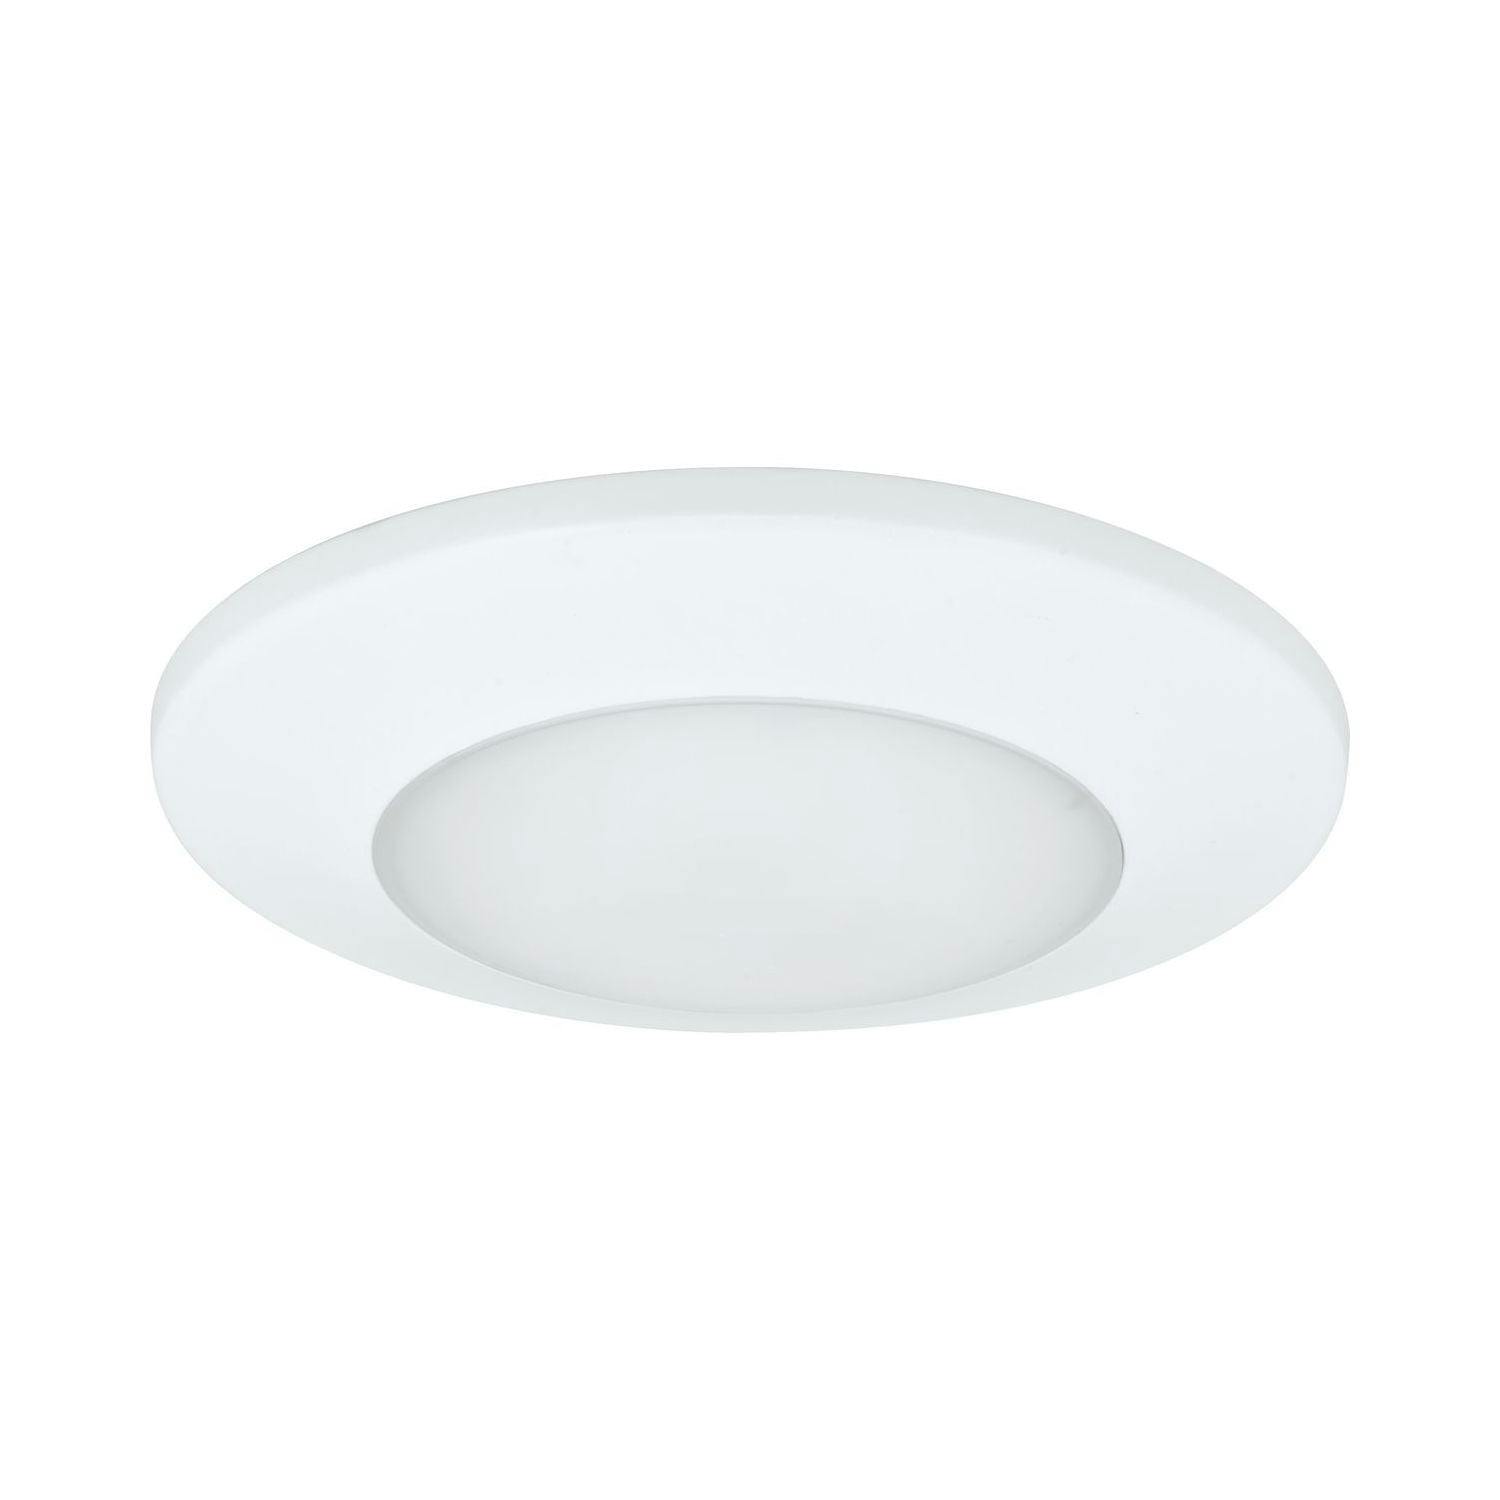 Sleek White 7.5" LED Flush Mount Light with Energy Star